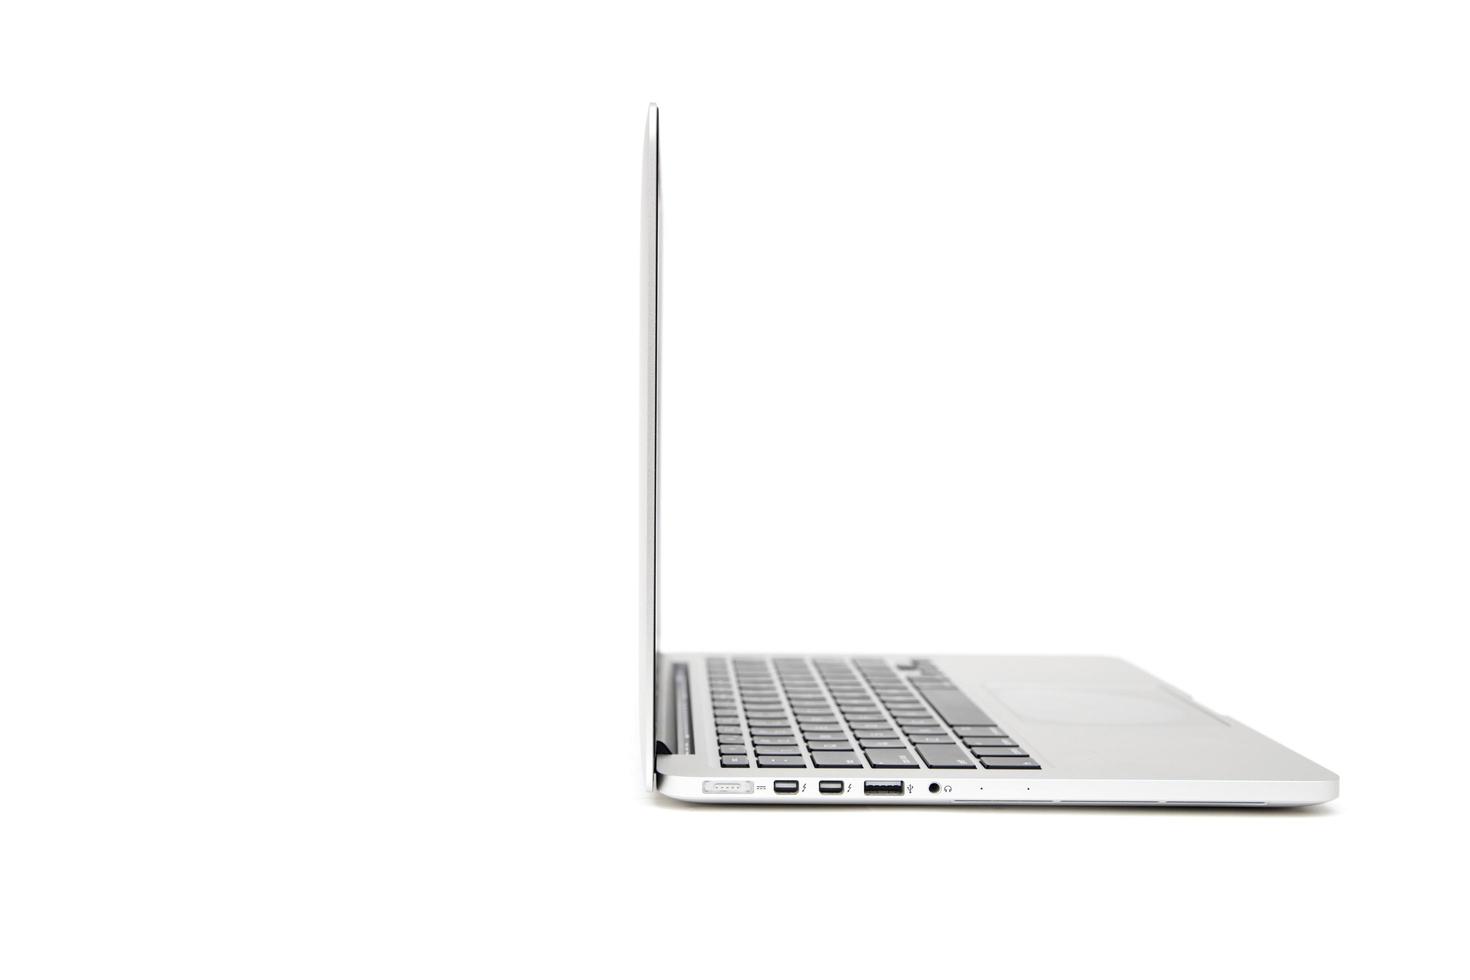 Belgrado, Serbia, 3 marzo 2017 - computer macbook isolato su bianco. il macbook è un marchio di computer notebook prodotto da apple inc. foto